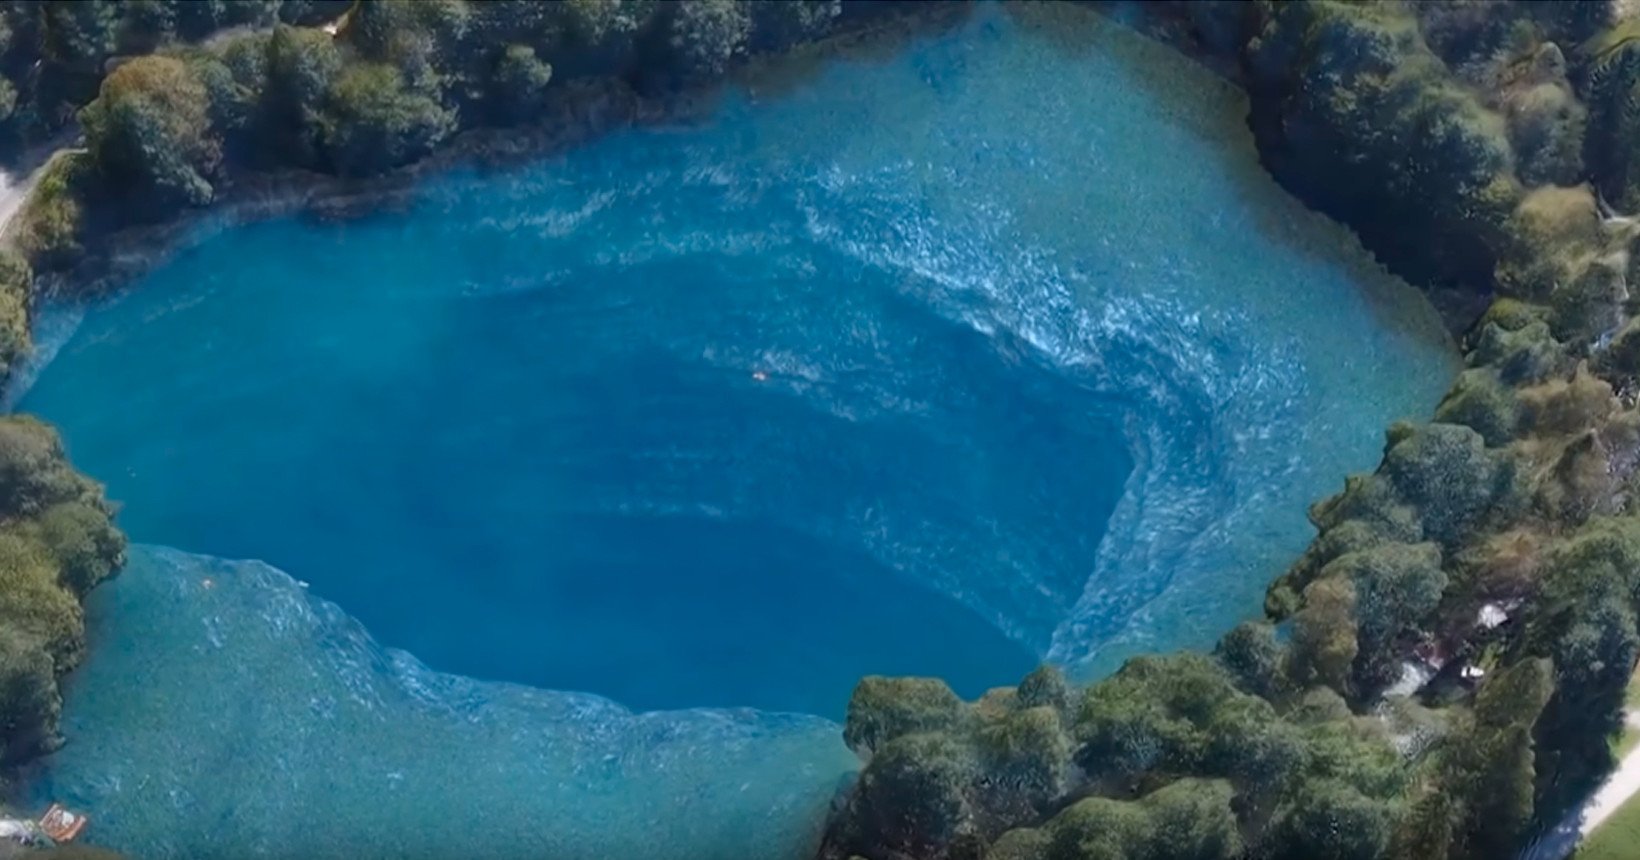 Озеро 5 см глубина. Голубое озеро «Черек-кёль&. Озеро Церик-Кель. Озеро Церик-кёль Кабардино-Балкария. Голубое озеро Церик-Кель.